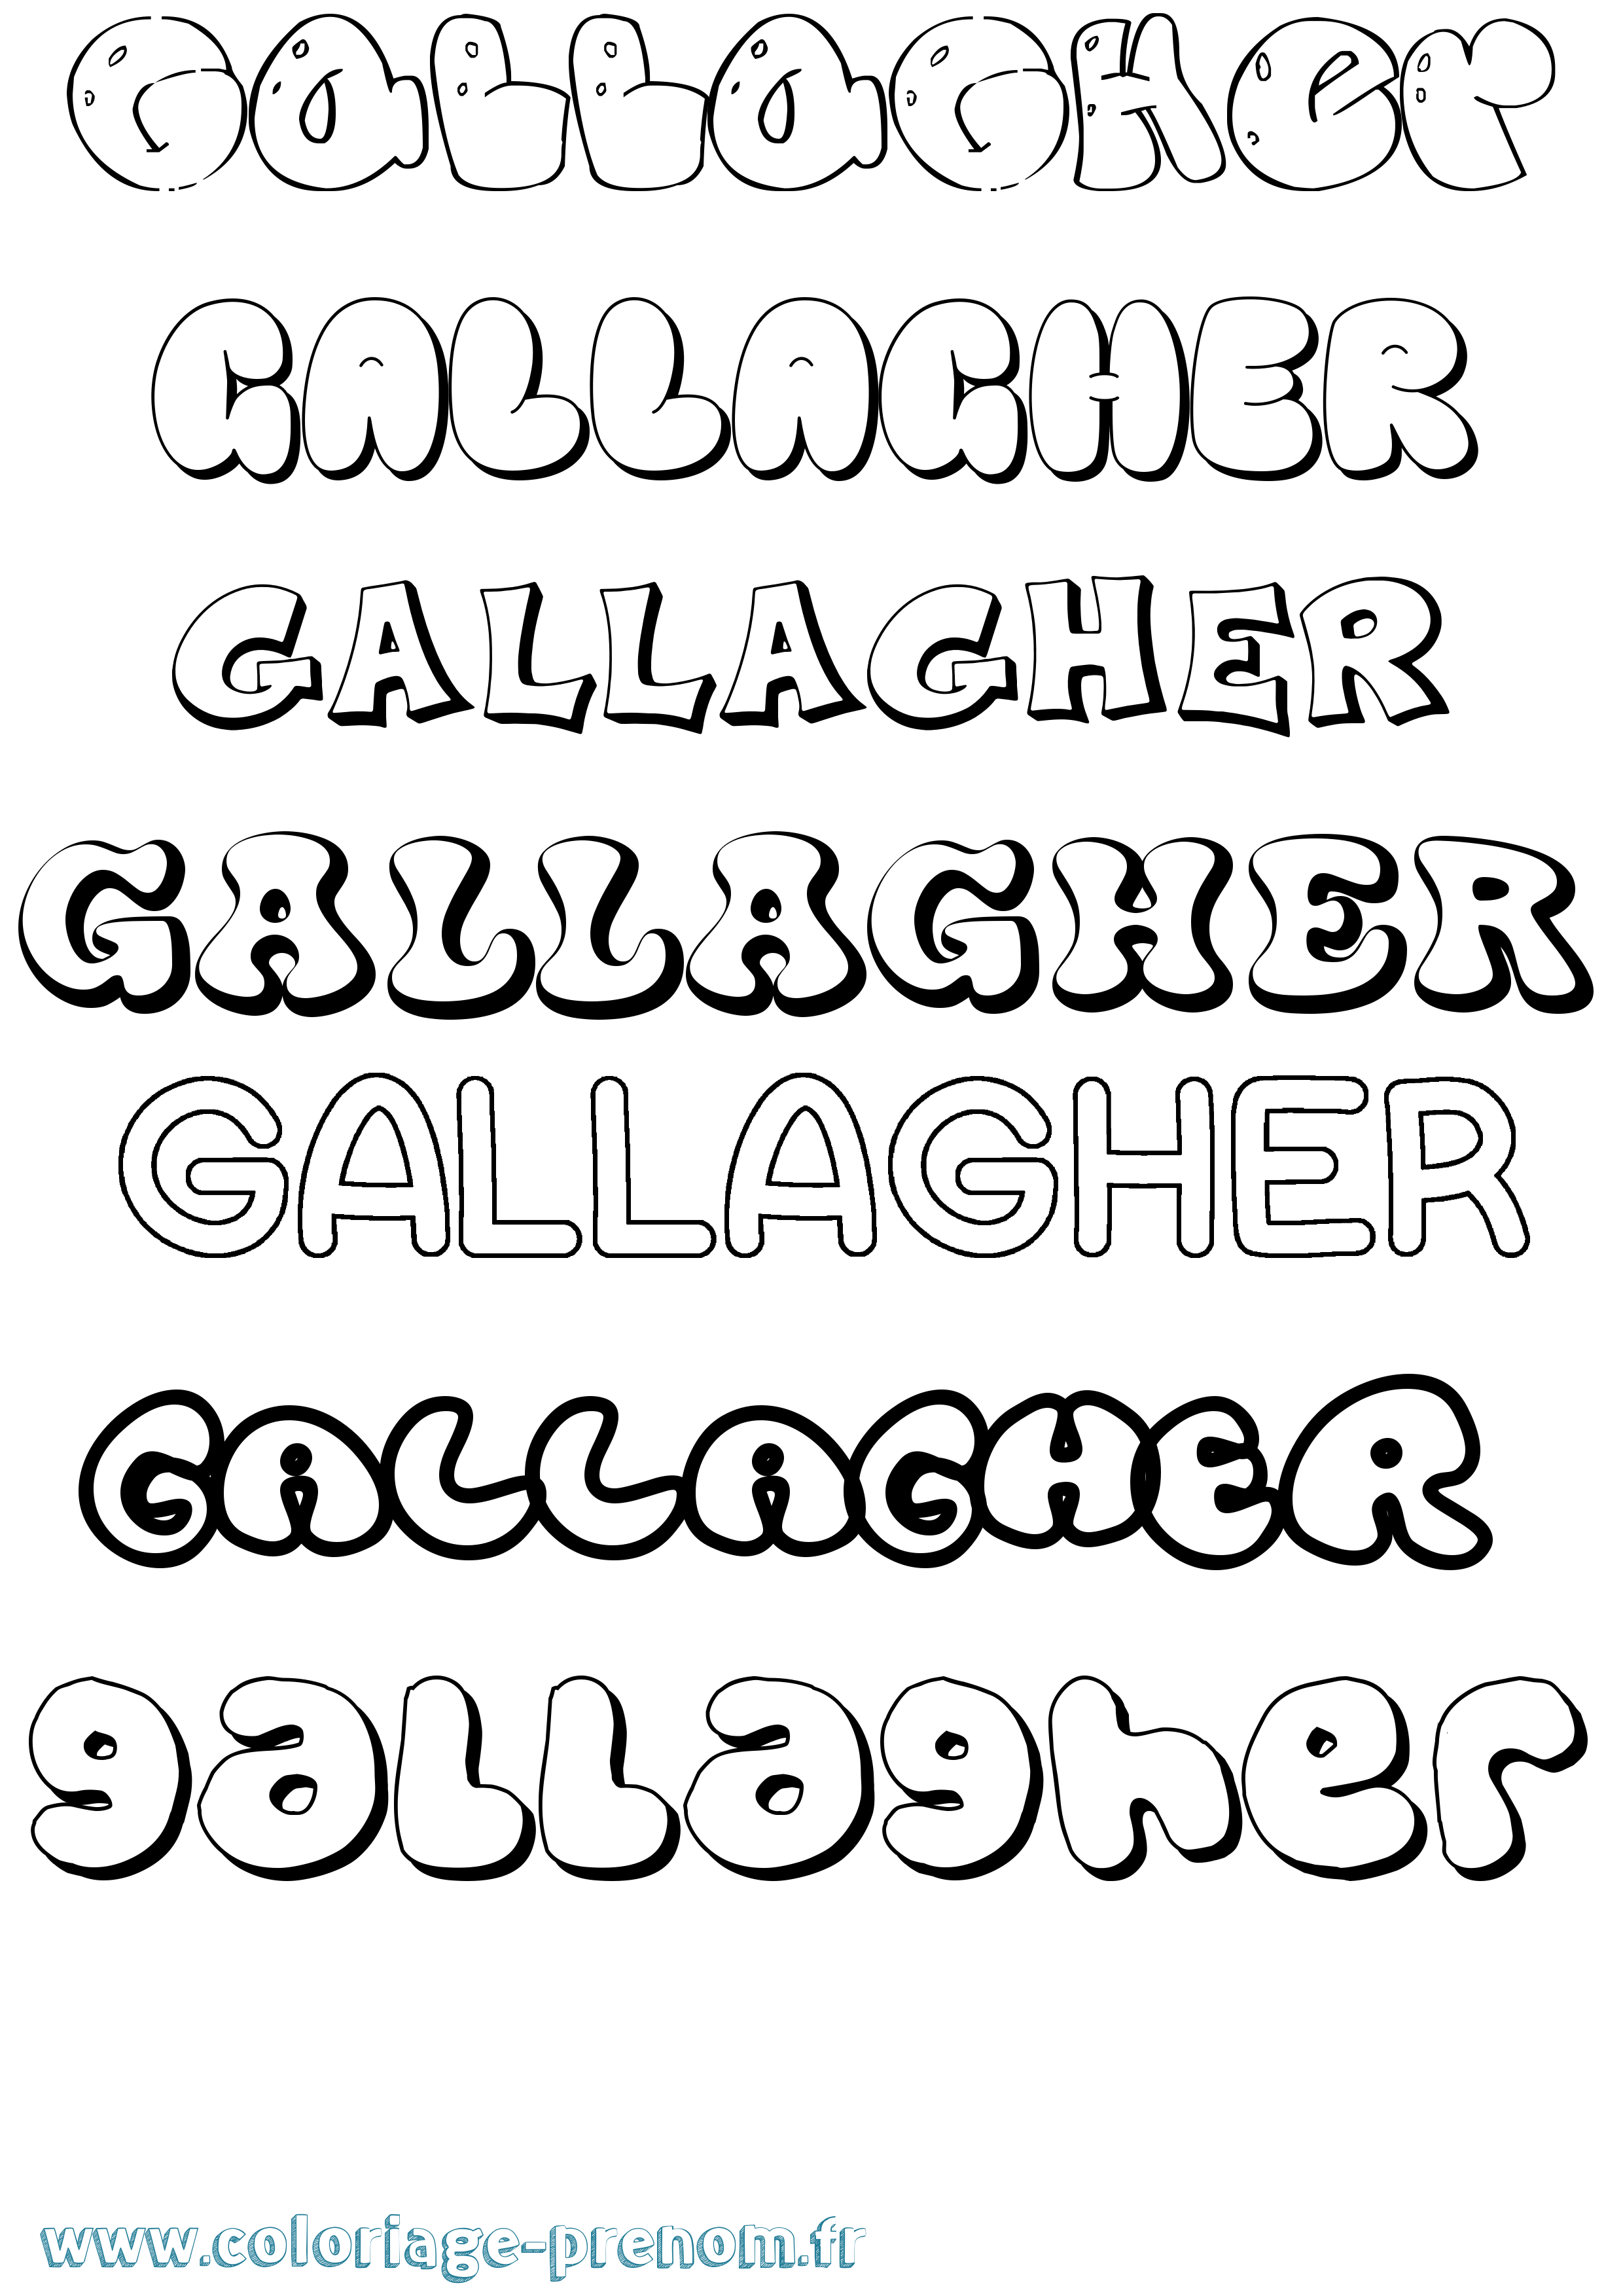 Coloriage prénom Gallagher Bubble